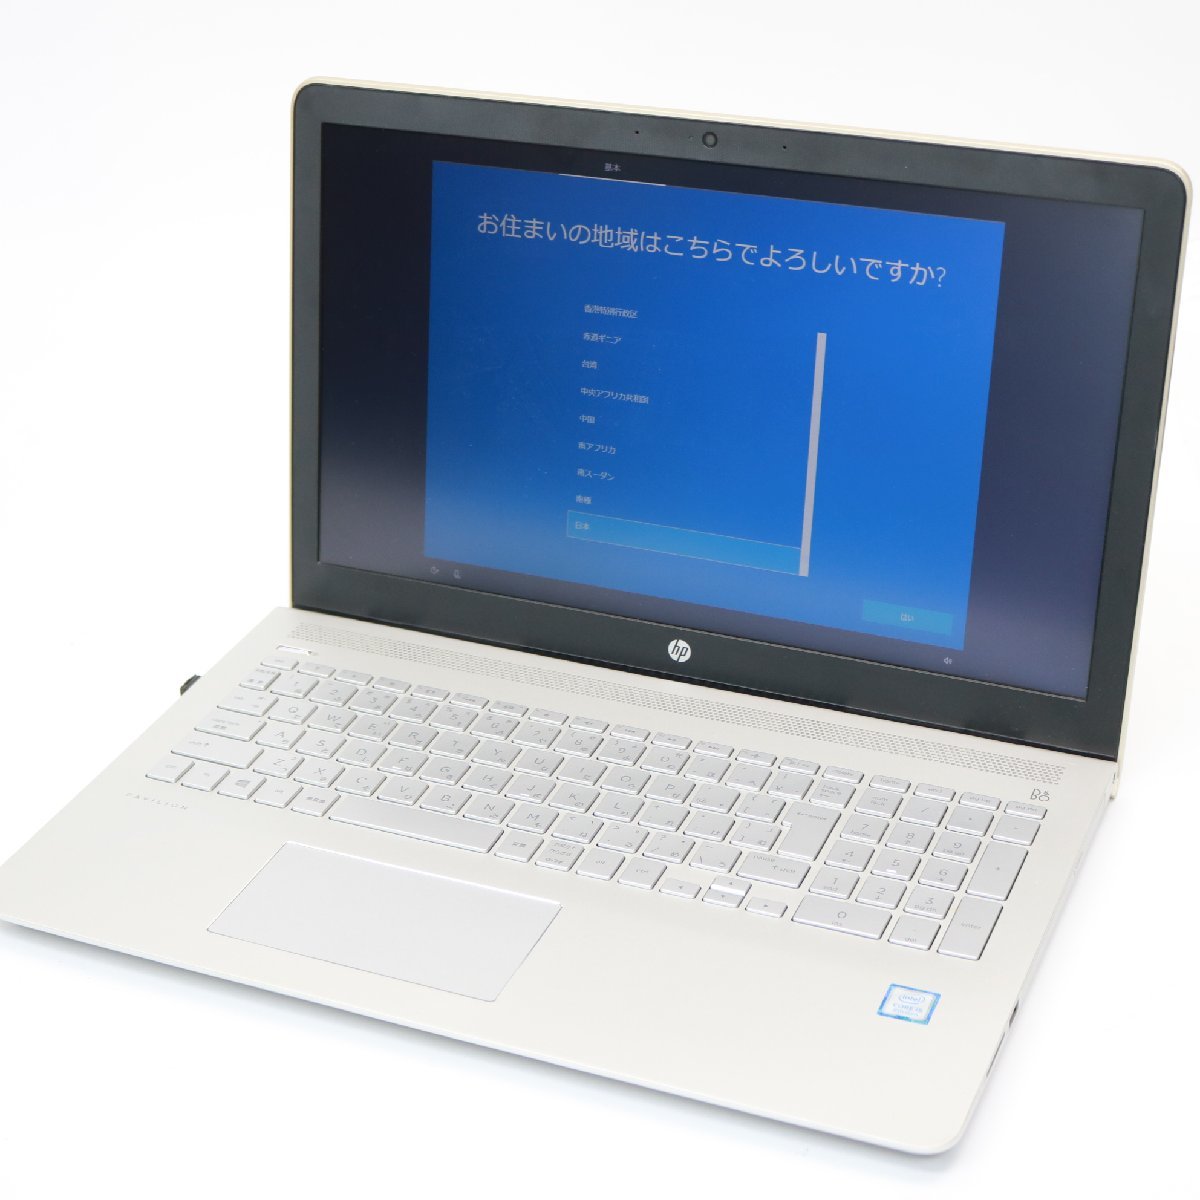 東京都新宿区にて HP ノートパソコン ENVY 7265NGW Corei5-8250U  を出張買取させて頂きました。